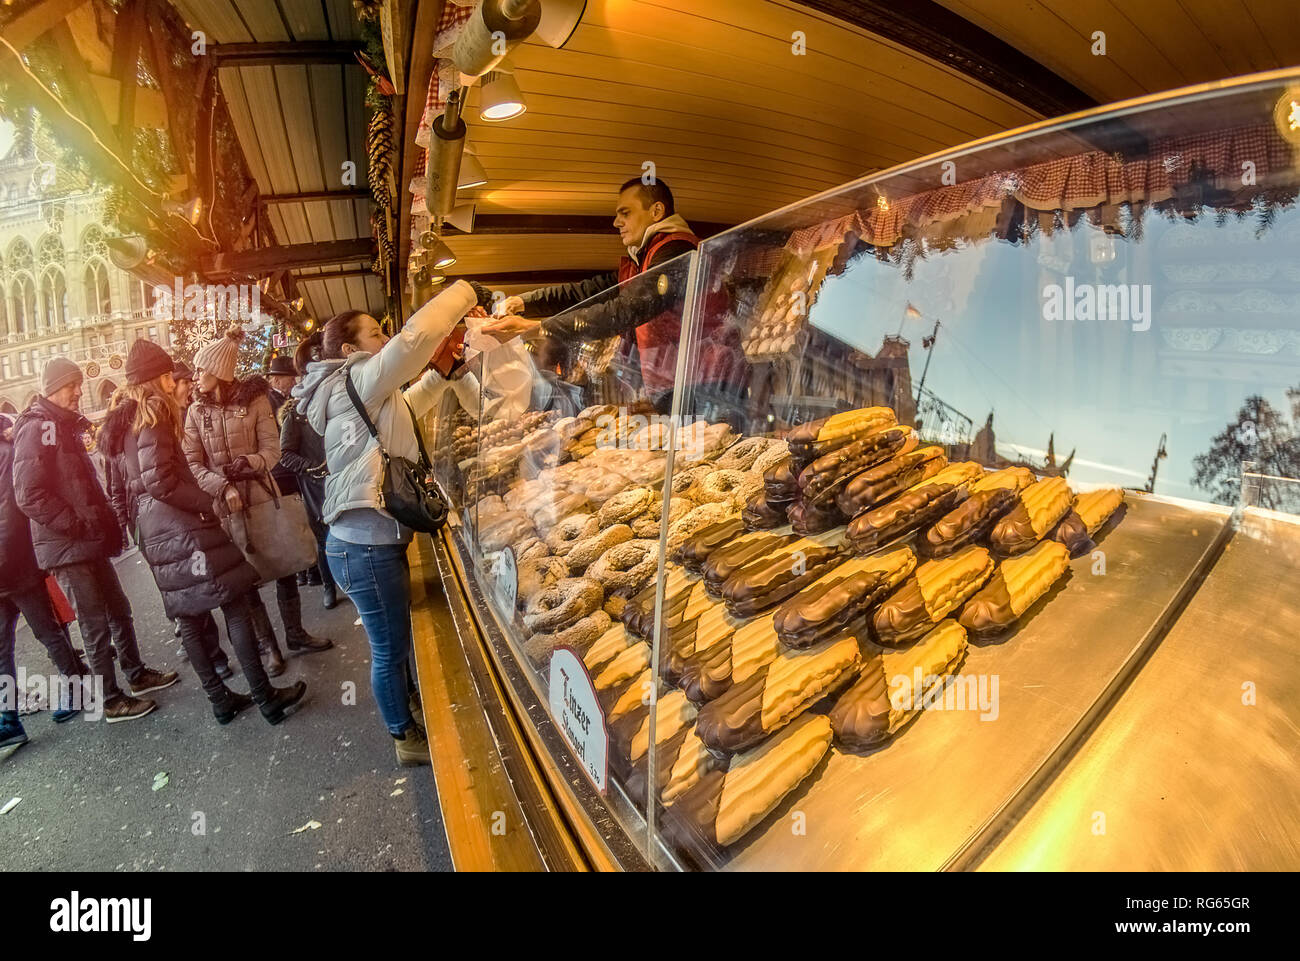 Wien, Österreich - 26. Dezember 2018. Der Weihnachtsmarkt vor dem Rathaus  (City Hall), die Leute kaufen frisches Gebäck der Messe Stockfotografie -  Alamy